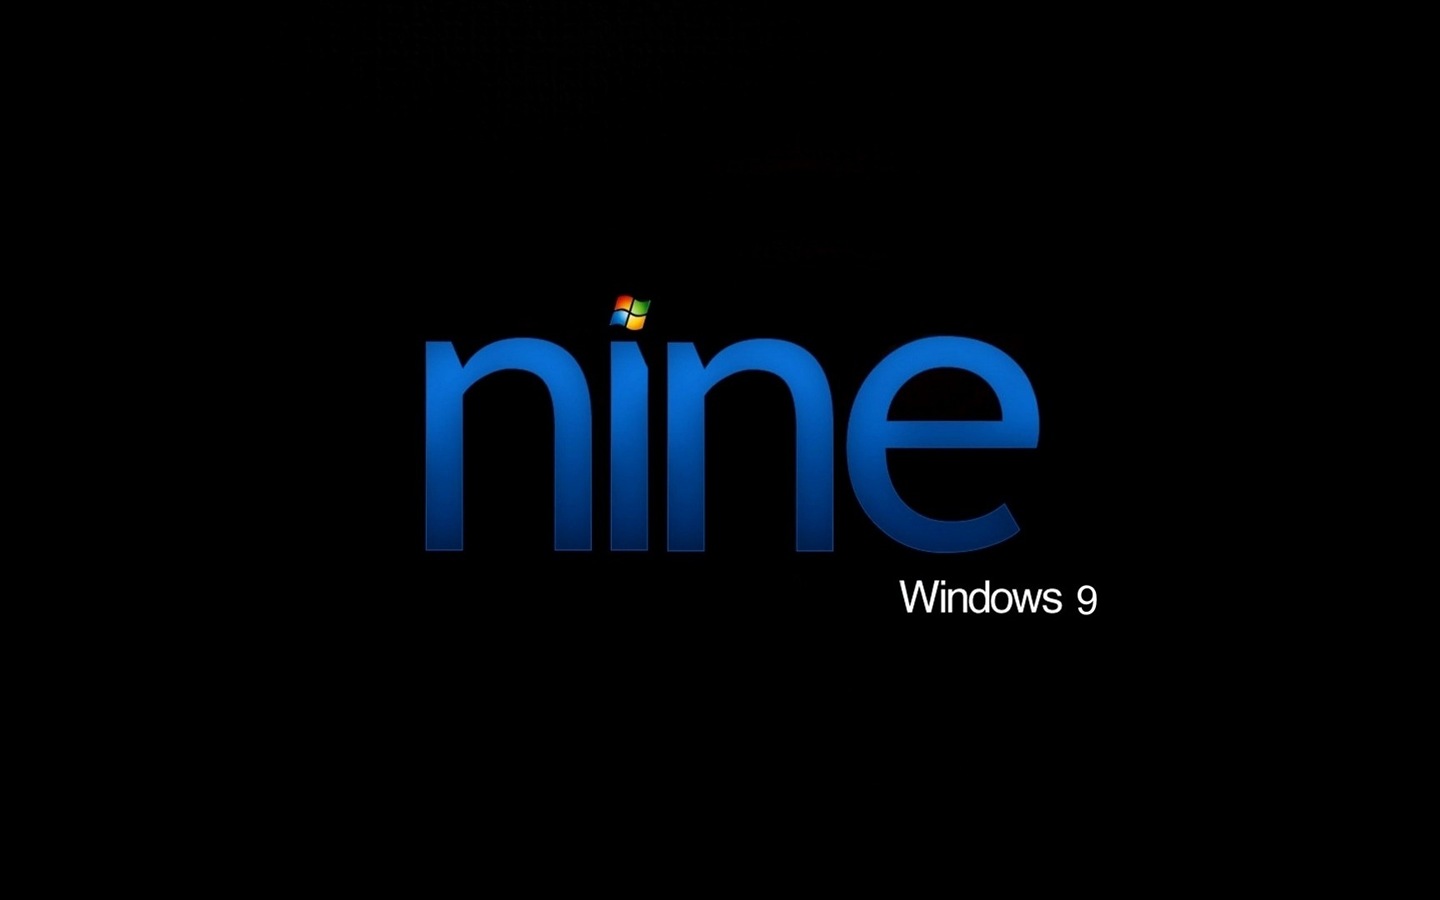 微软 Windows 9 系统主题 高清壁纸18 - 1440x900